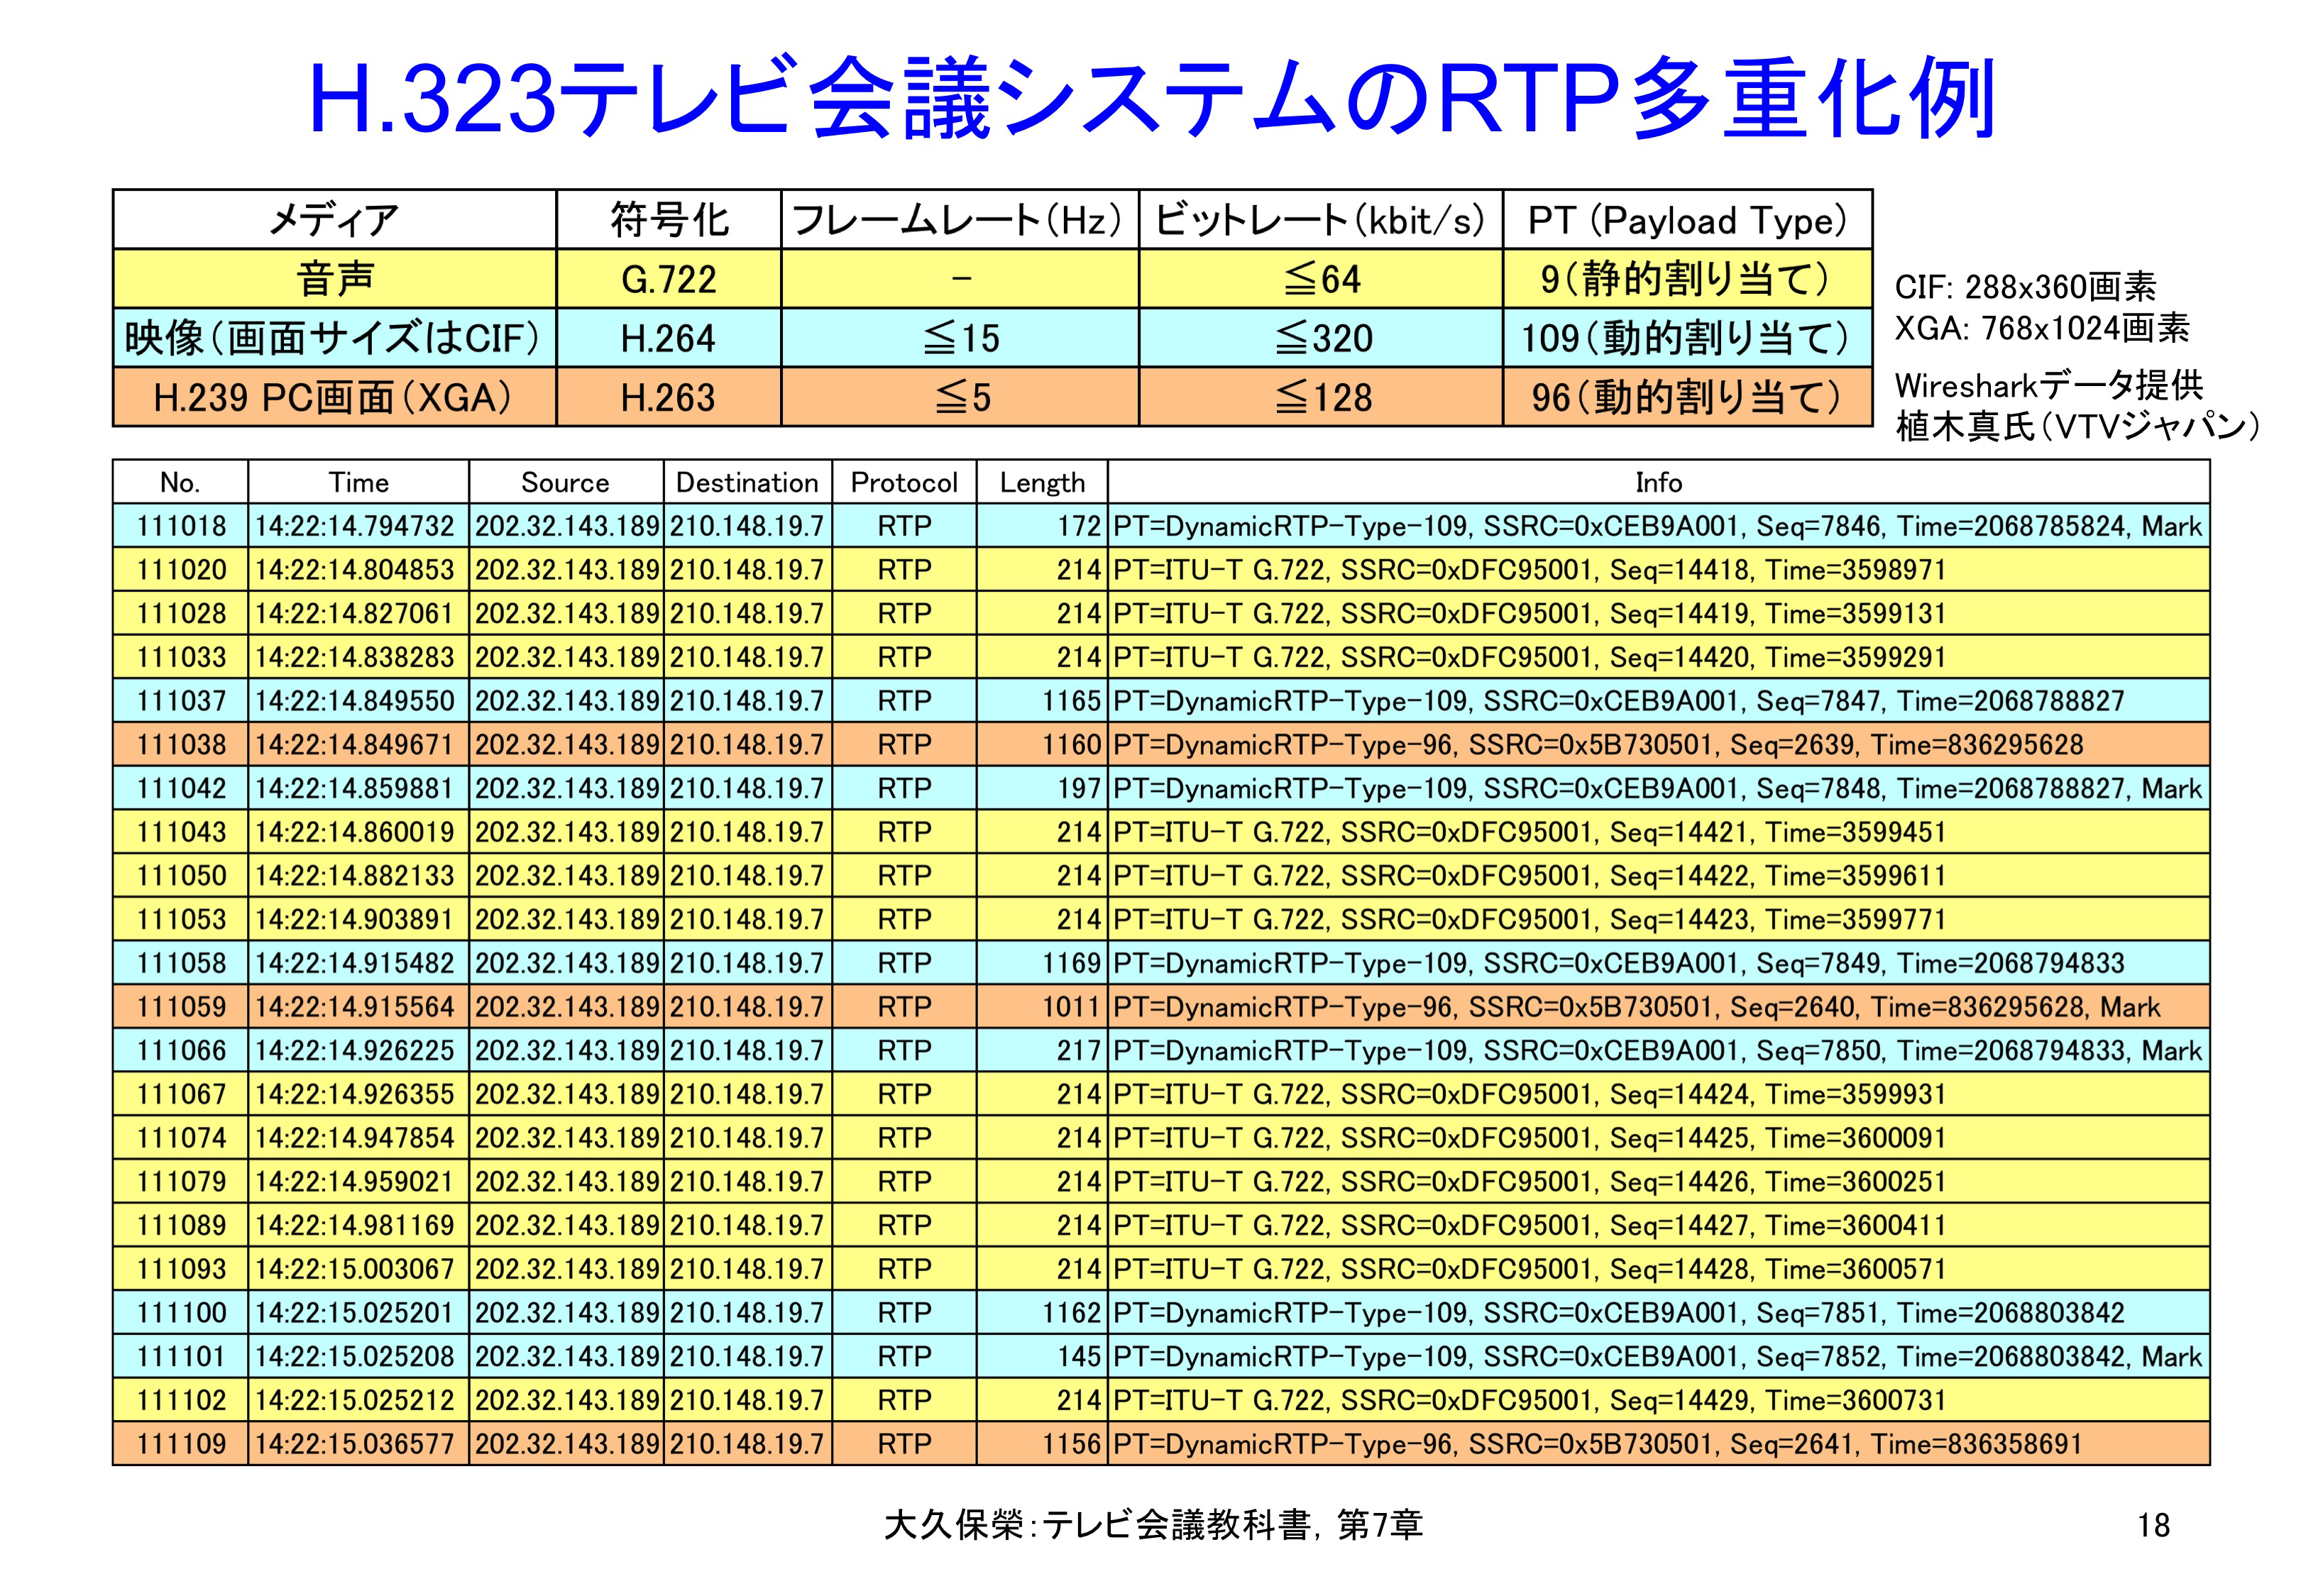 図7-18 H.323テレビ会議システムのRTP多重化例